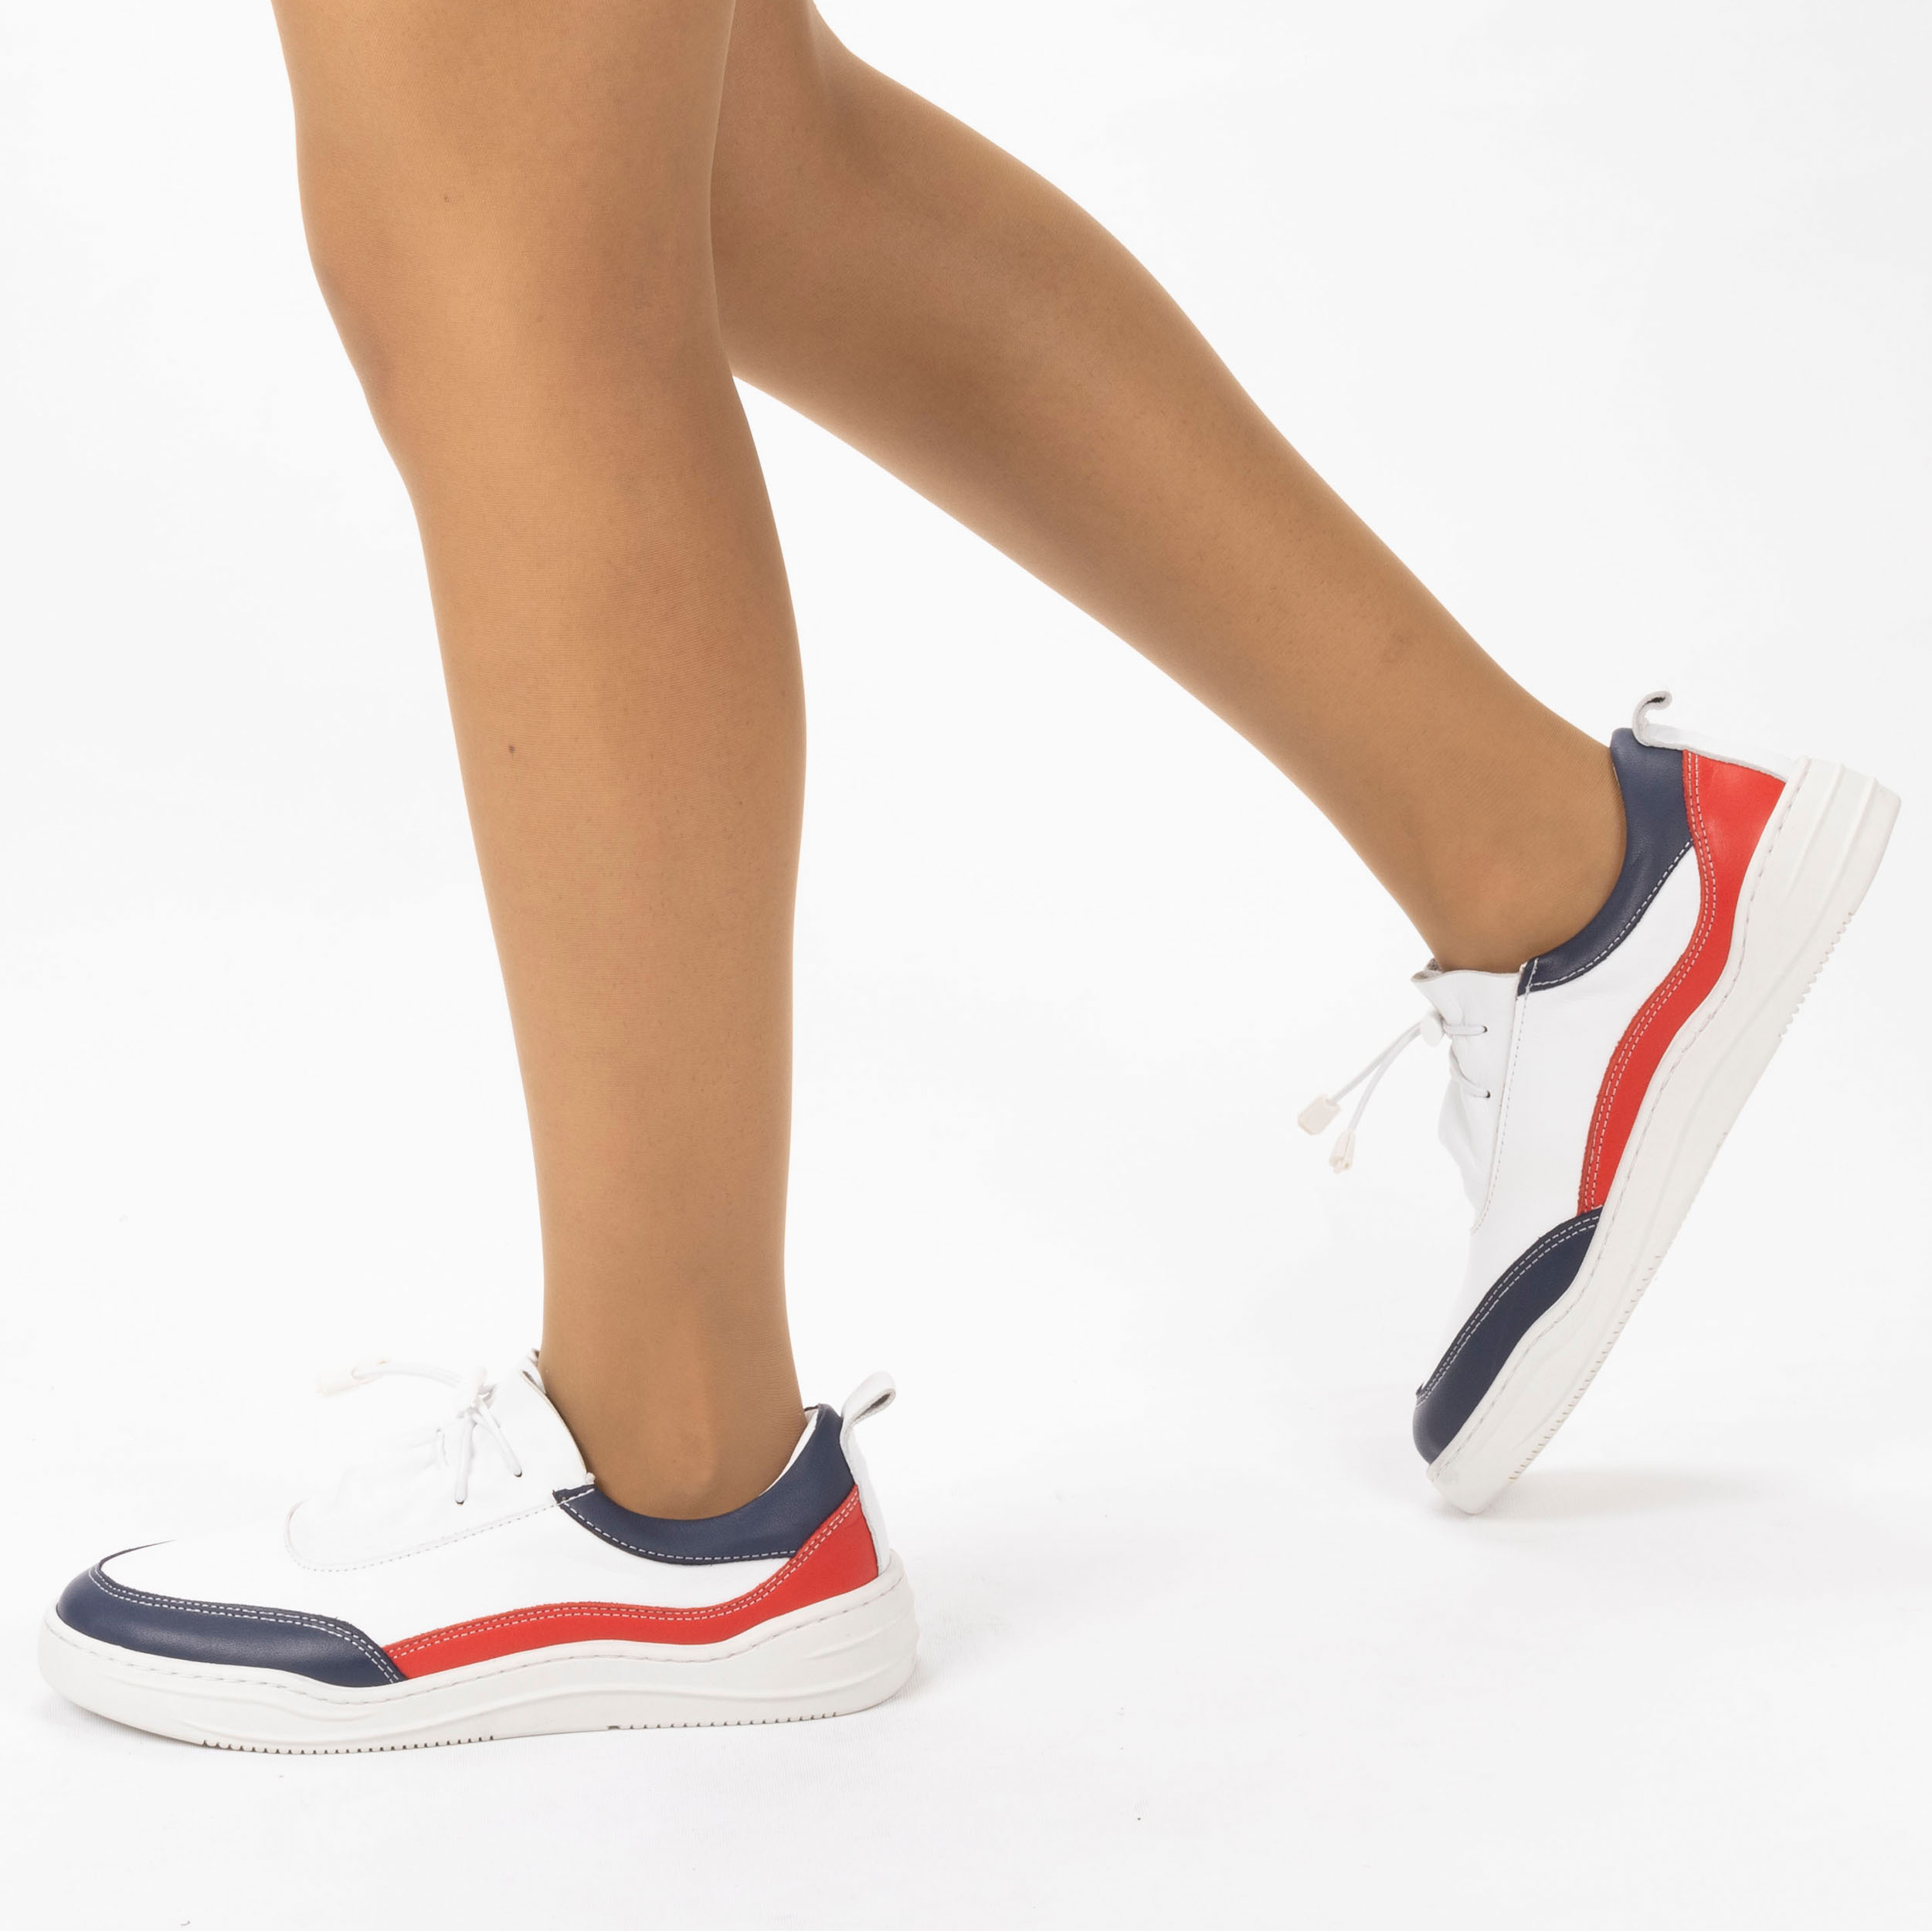 Kadın Hakiki Deri  Günlük Spor Ayakkabı / Sneakers, Renk: Lacivert - Kırmızı, Beden: 37